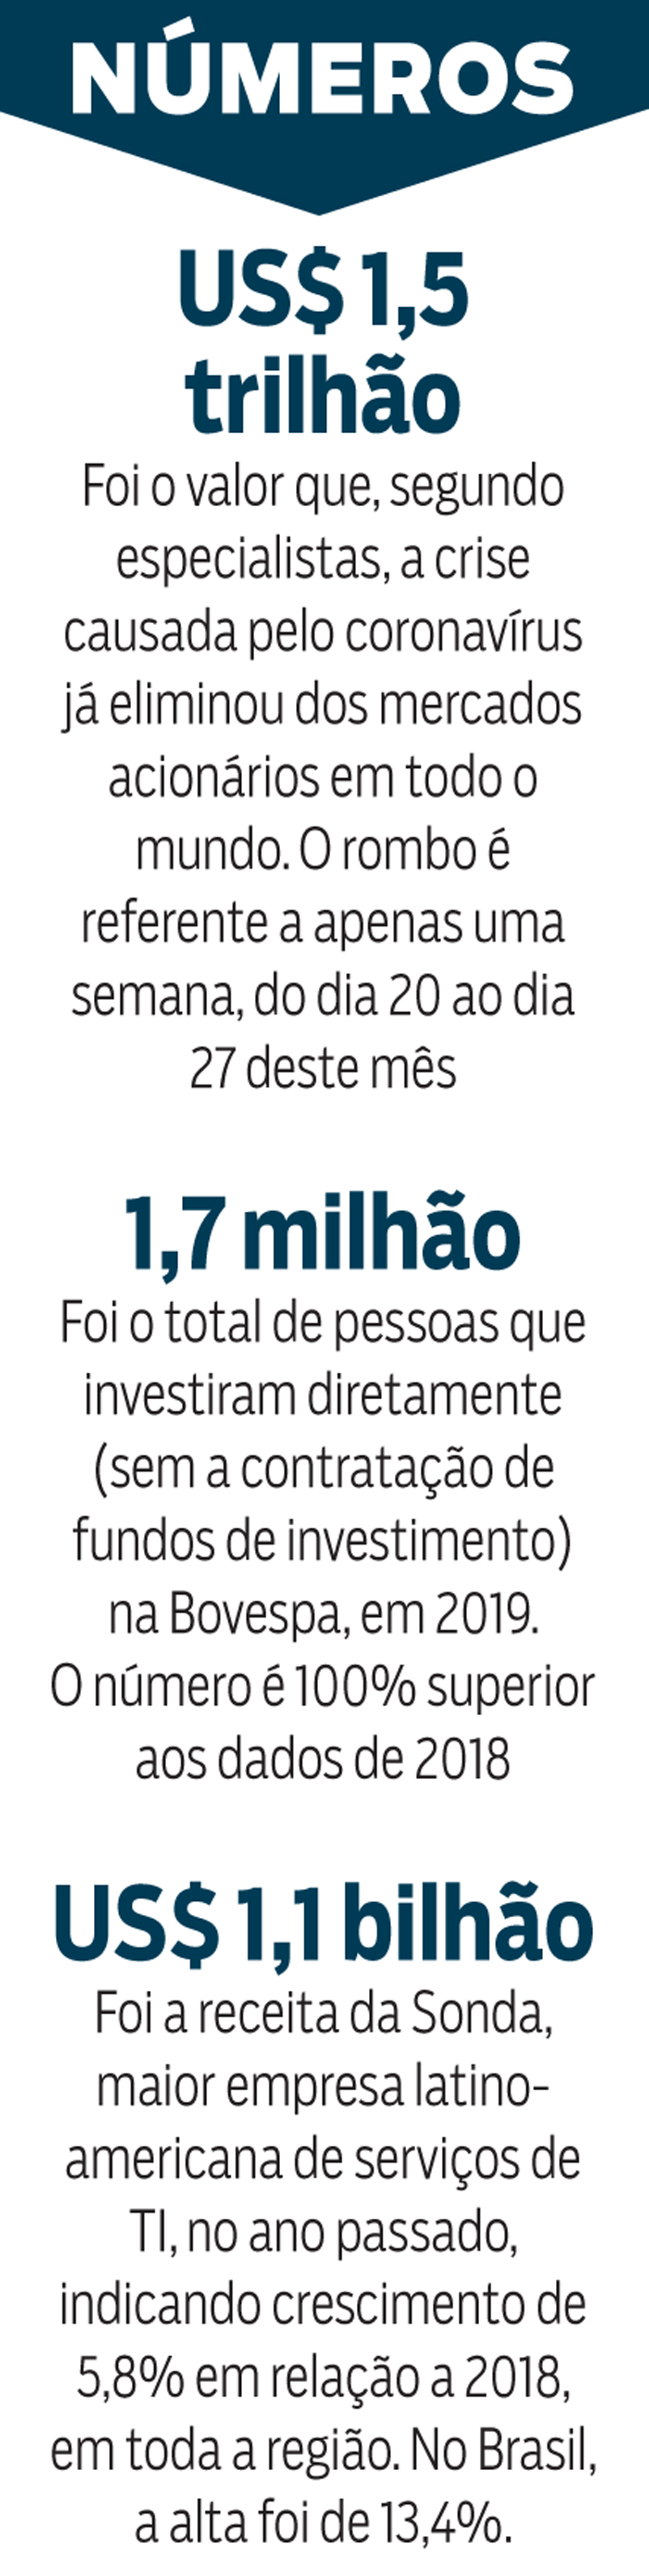 Empresa quer investir US$ 1 bilhão em Nova Liga do Brasil